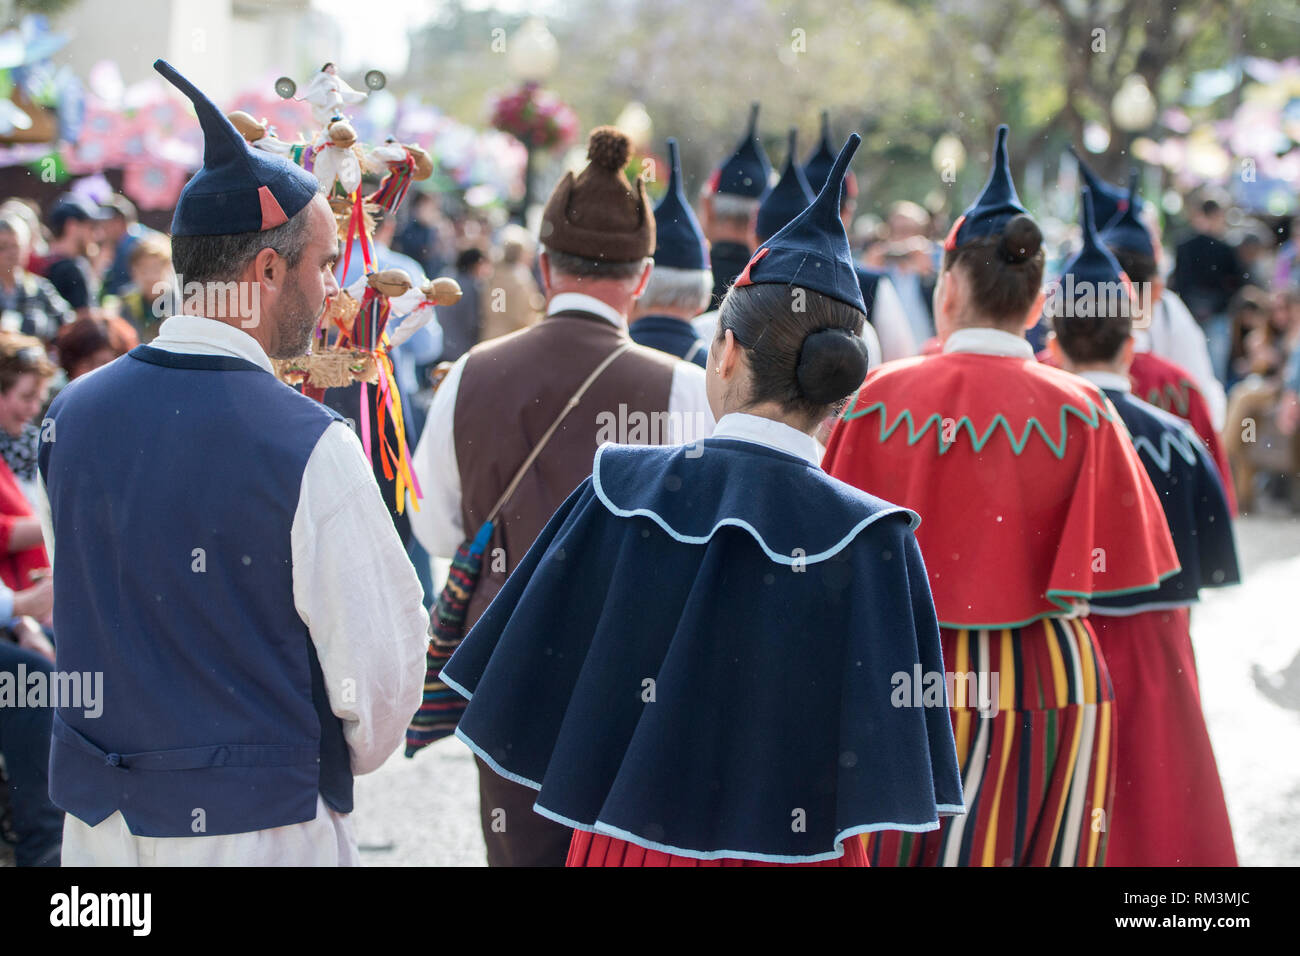 Un groupe de musique folklorique traditionnelle madère s à la Festa da Flor ou le Festival des fleurs de printemps dans la ville de Funchal sur l'île de Madère dans l'Atla Banque D'Images